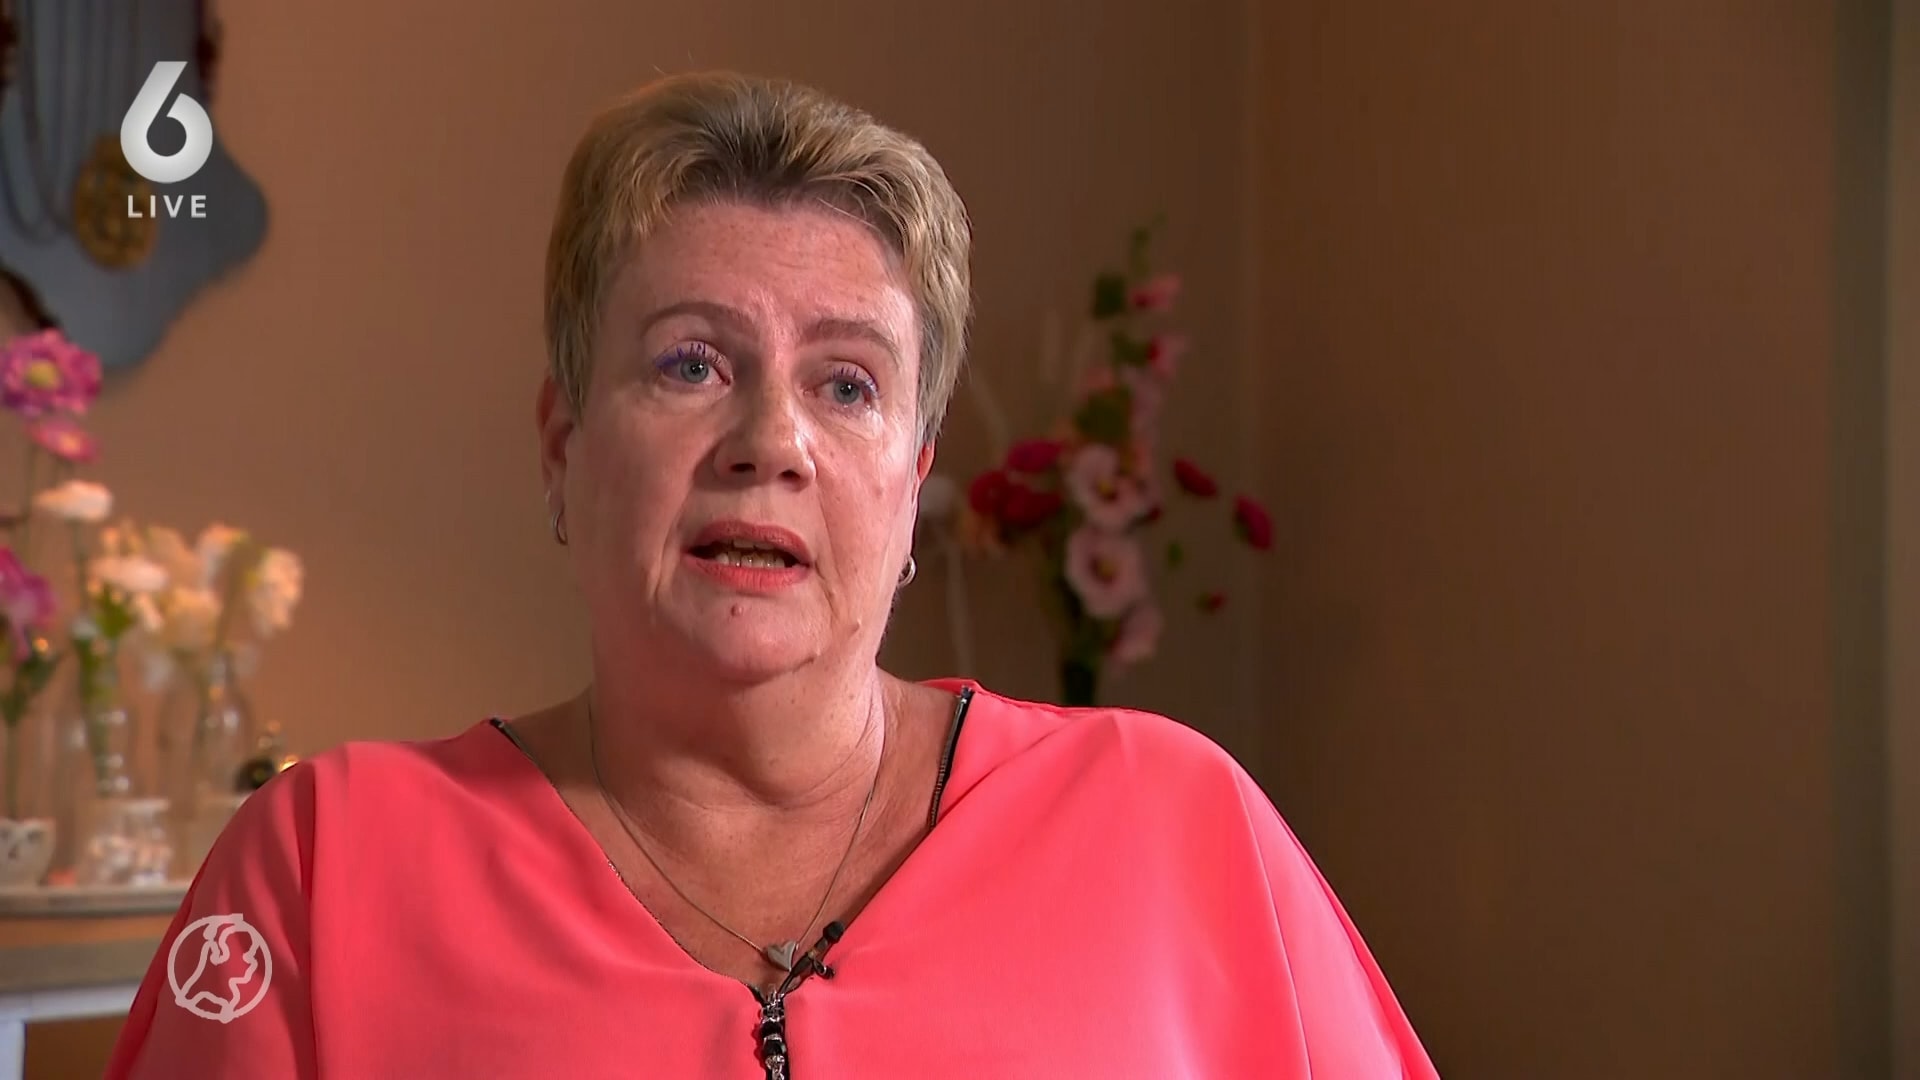 Grote zorgen om ouderenzorg: 'Mijn moeder lag drijfnat in haar ontlasting'